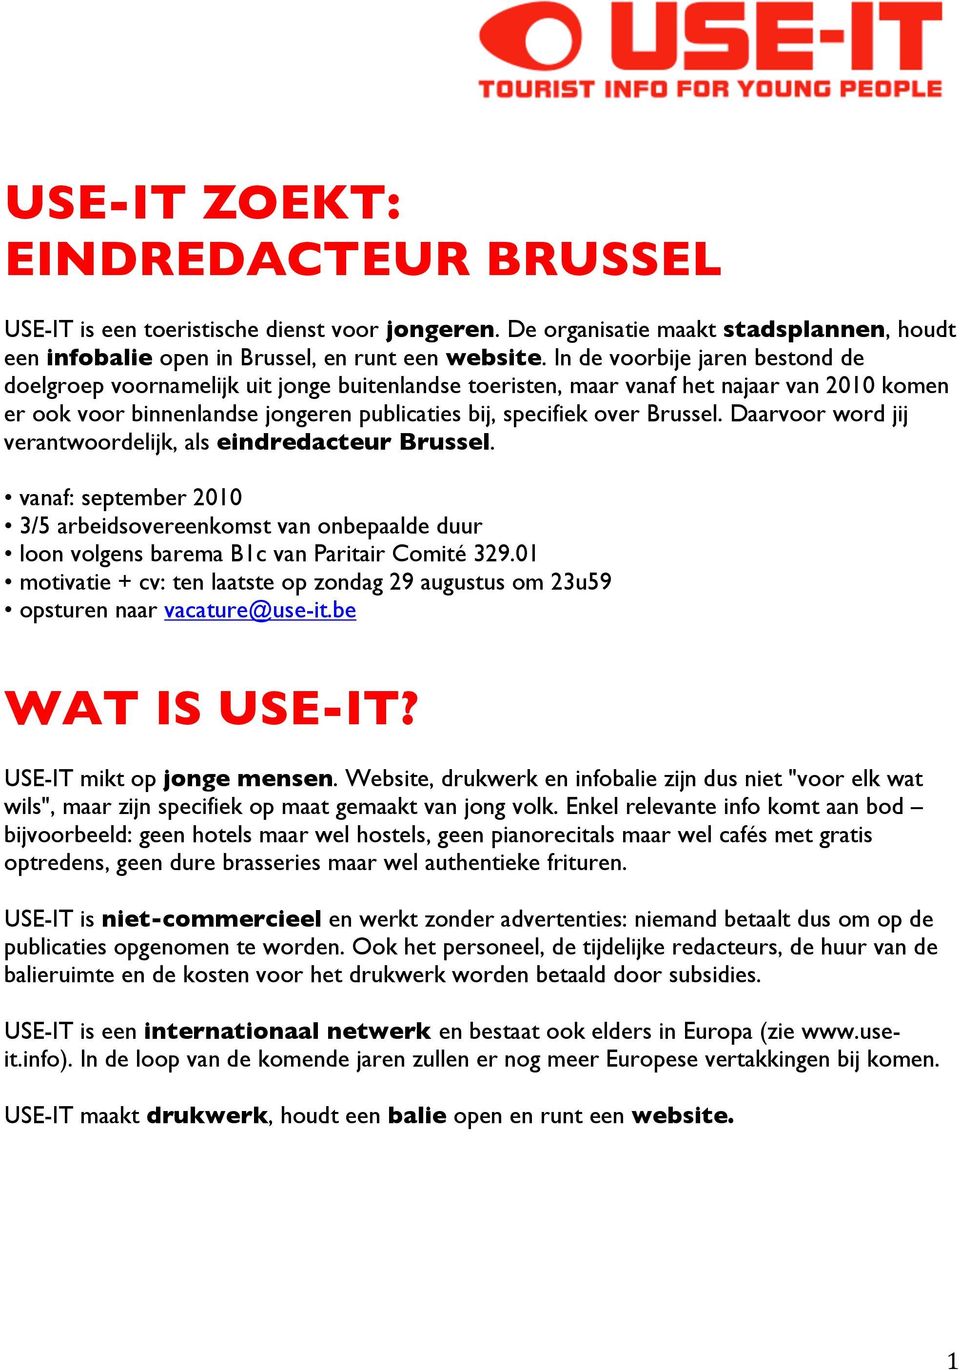 Daarvoor word jij verantwoordelijk, als eindredacteur Brussel. vanaf: september 2010 3/5 arbeidsovereenkomst van onbepaalde duur loon volgens barema B1c van Paritair Comité 329.